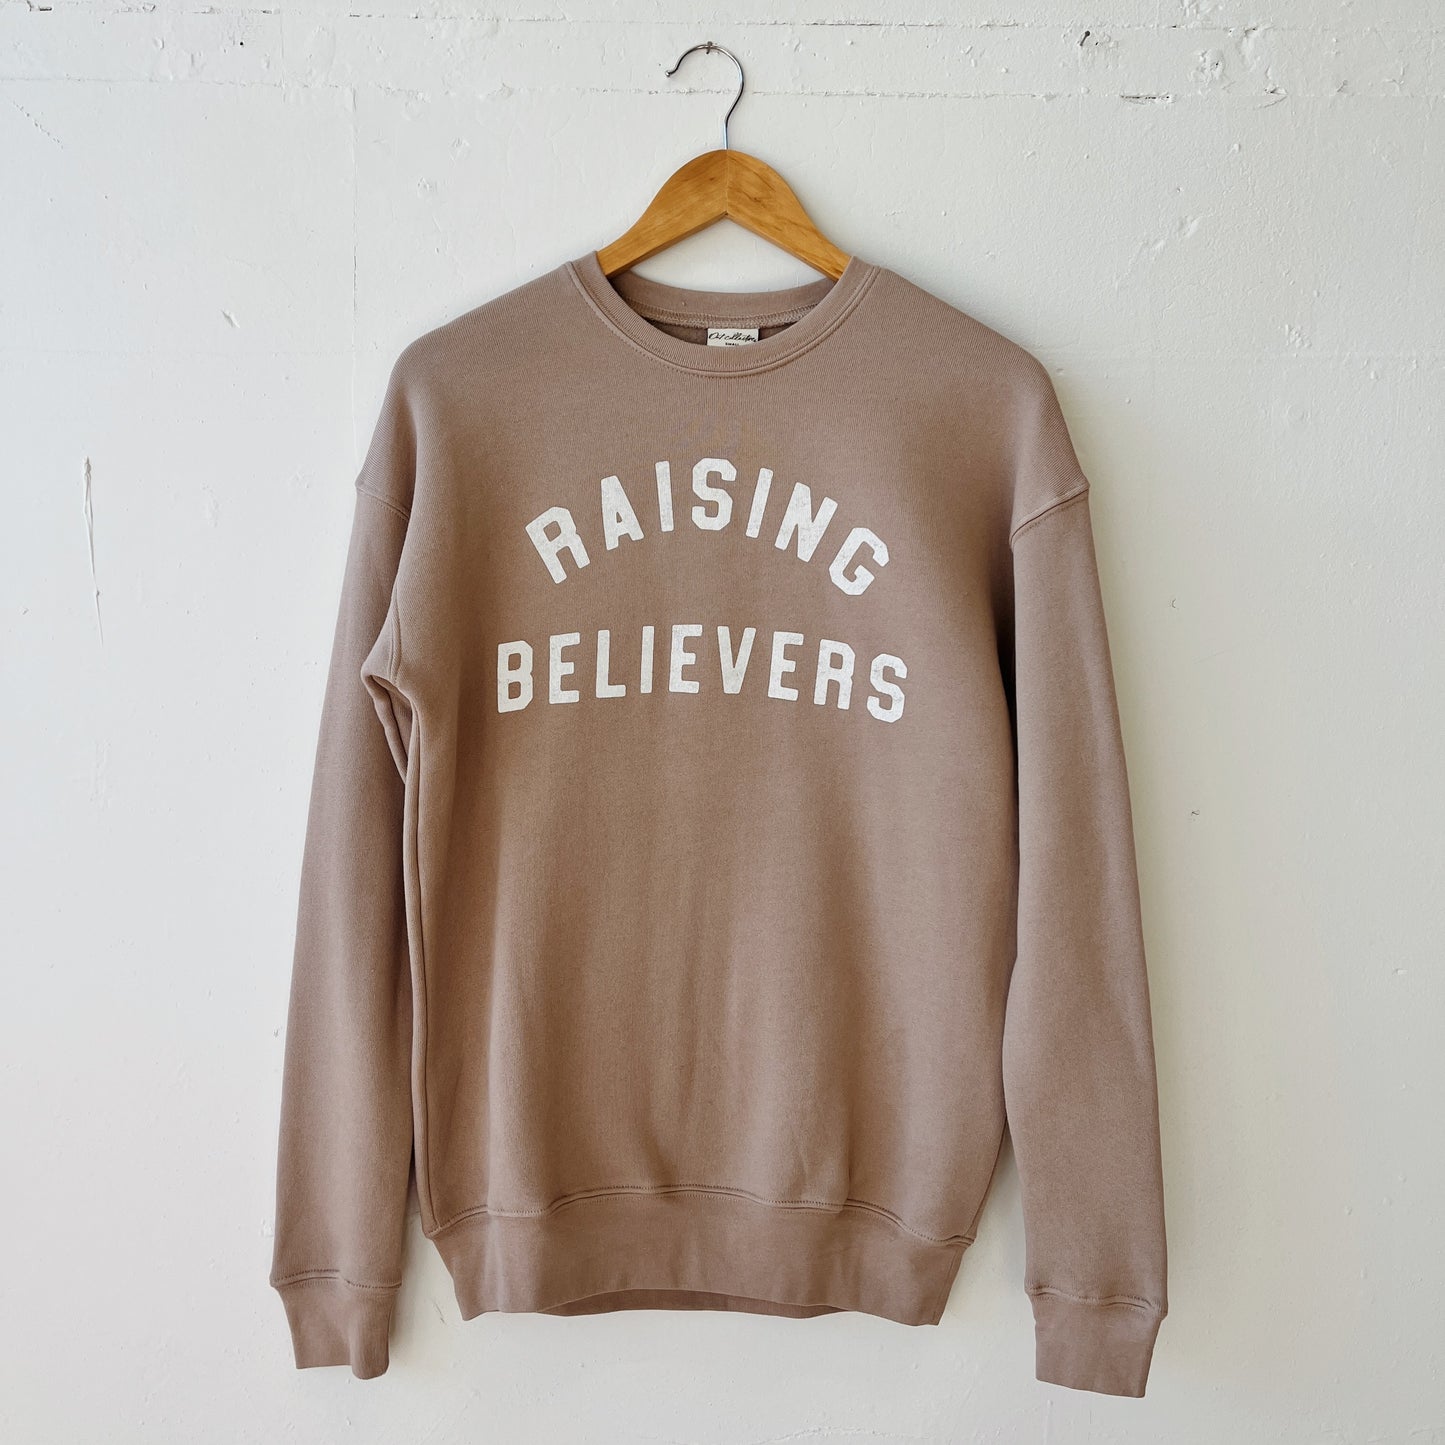 Raising Believers Sweatshirt S-XL